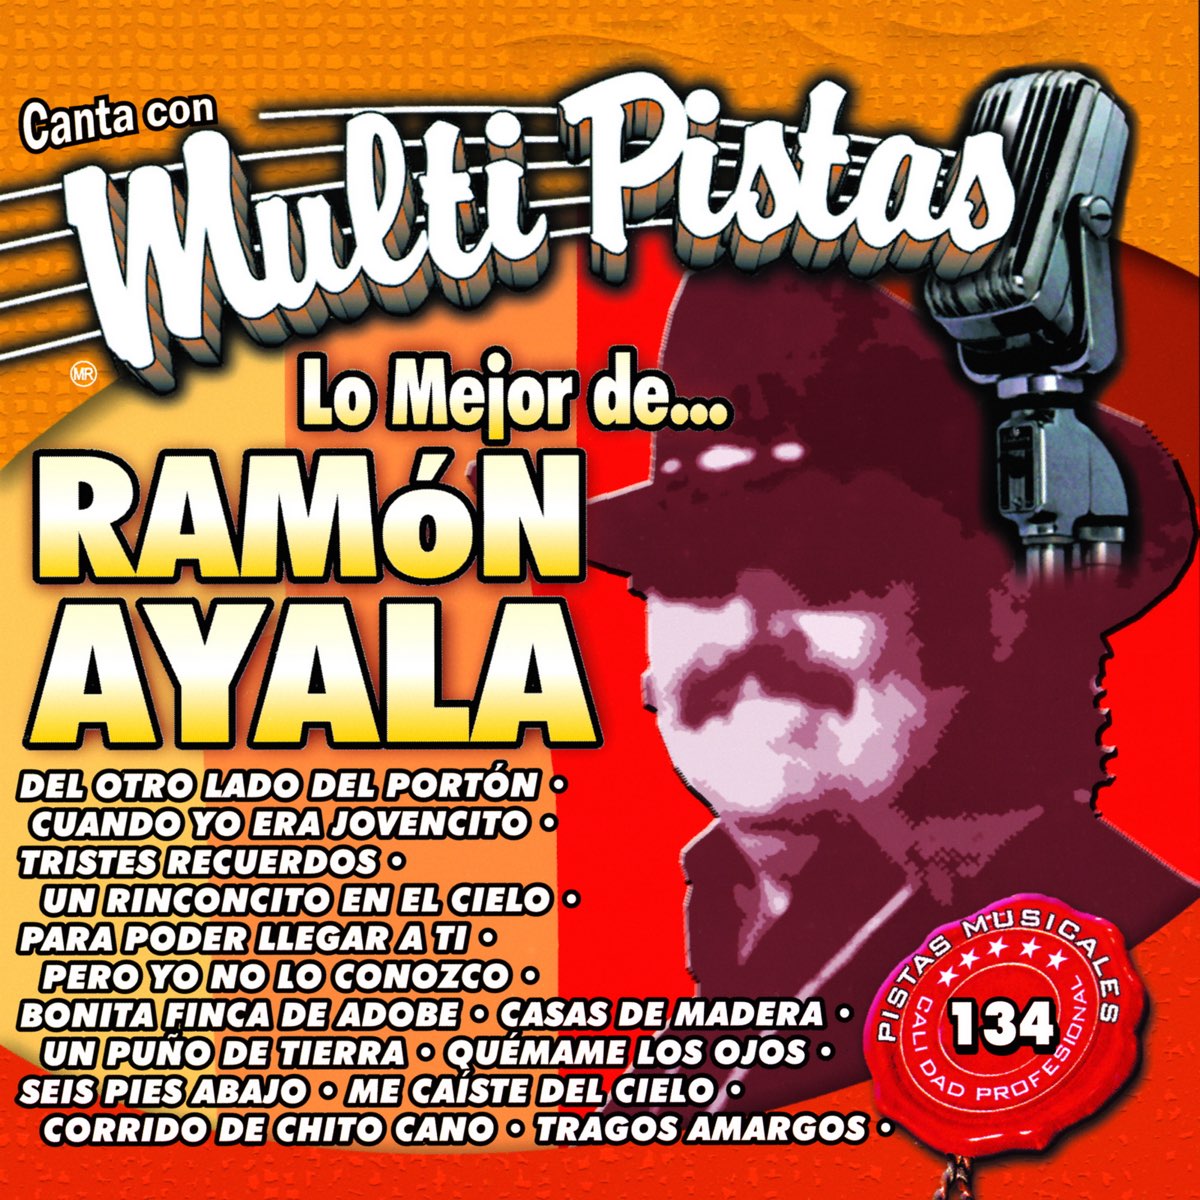 Canta Con Multi Pistas Lo Mejor De... Ramón Ayala (Karaoke Versions) de MMP  en Apple Music